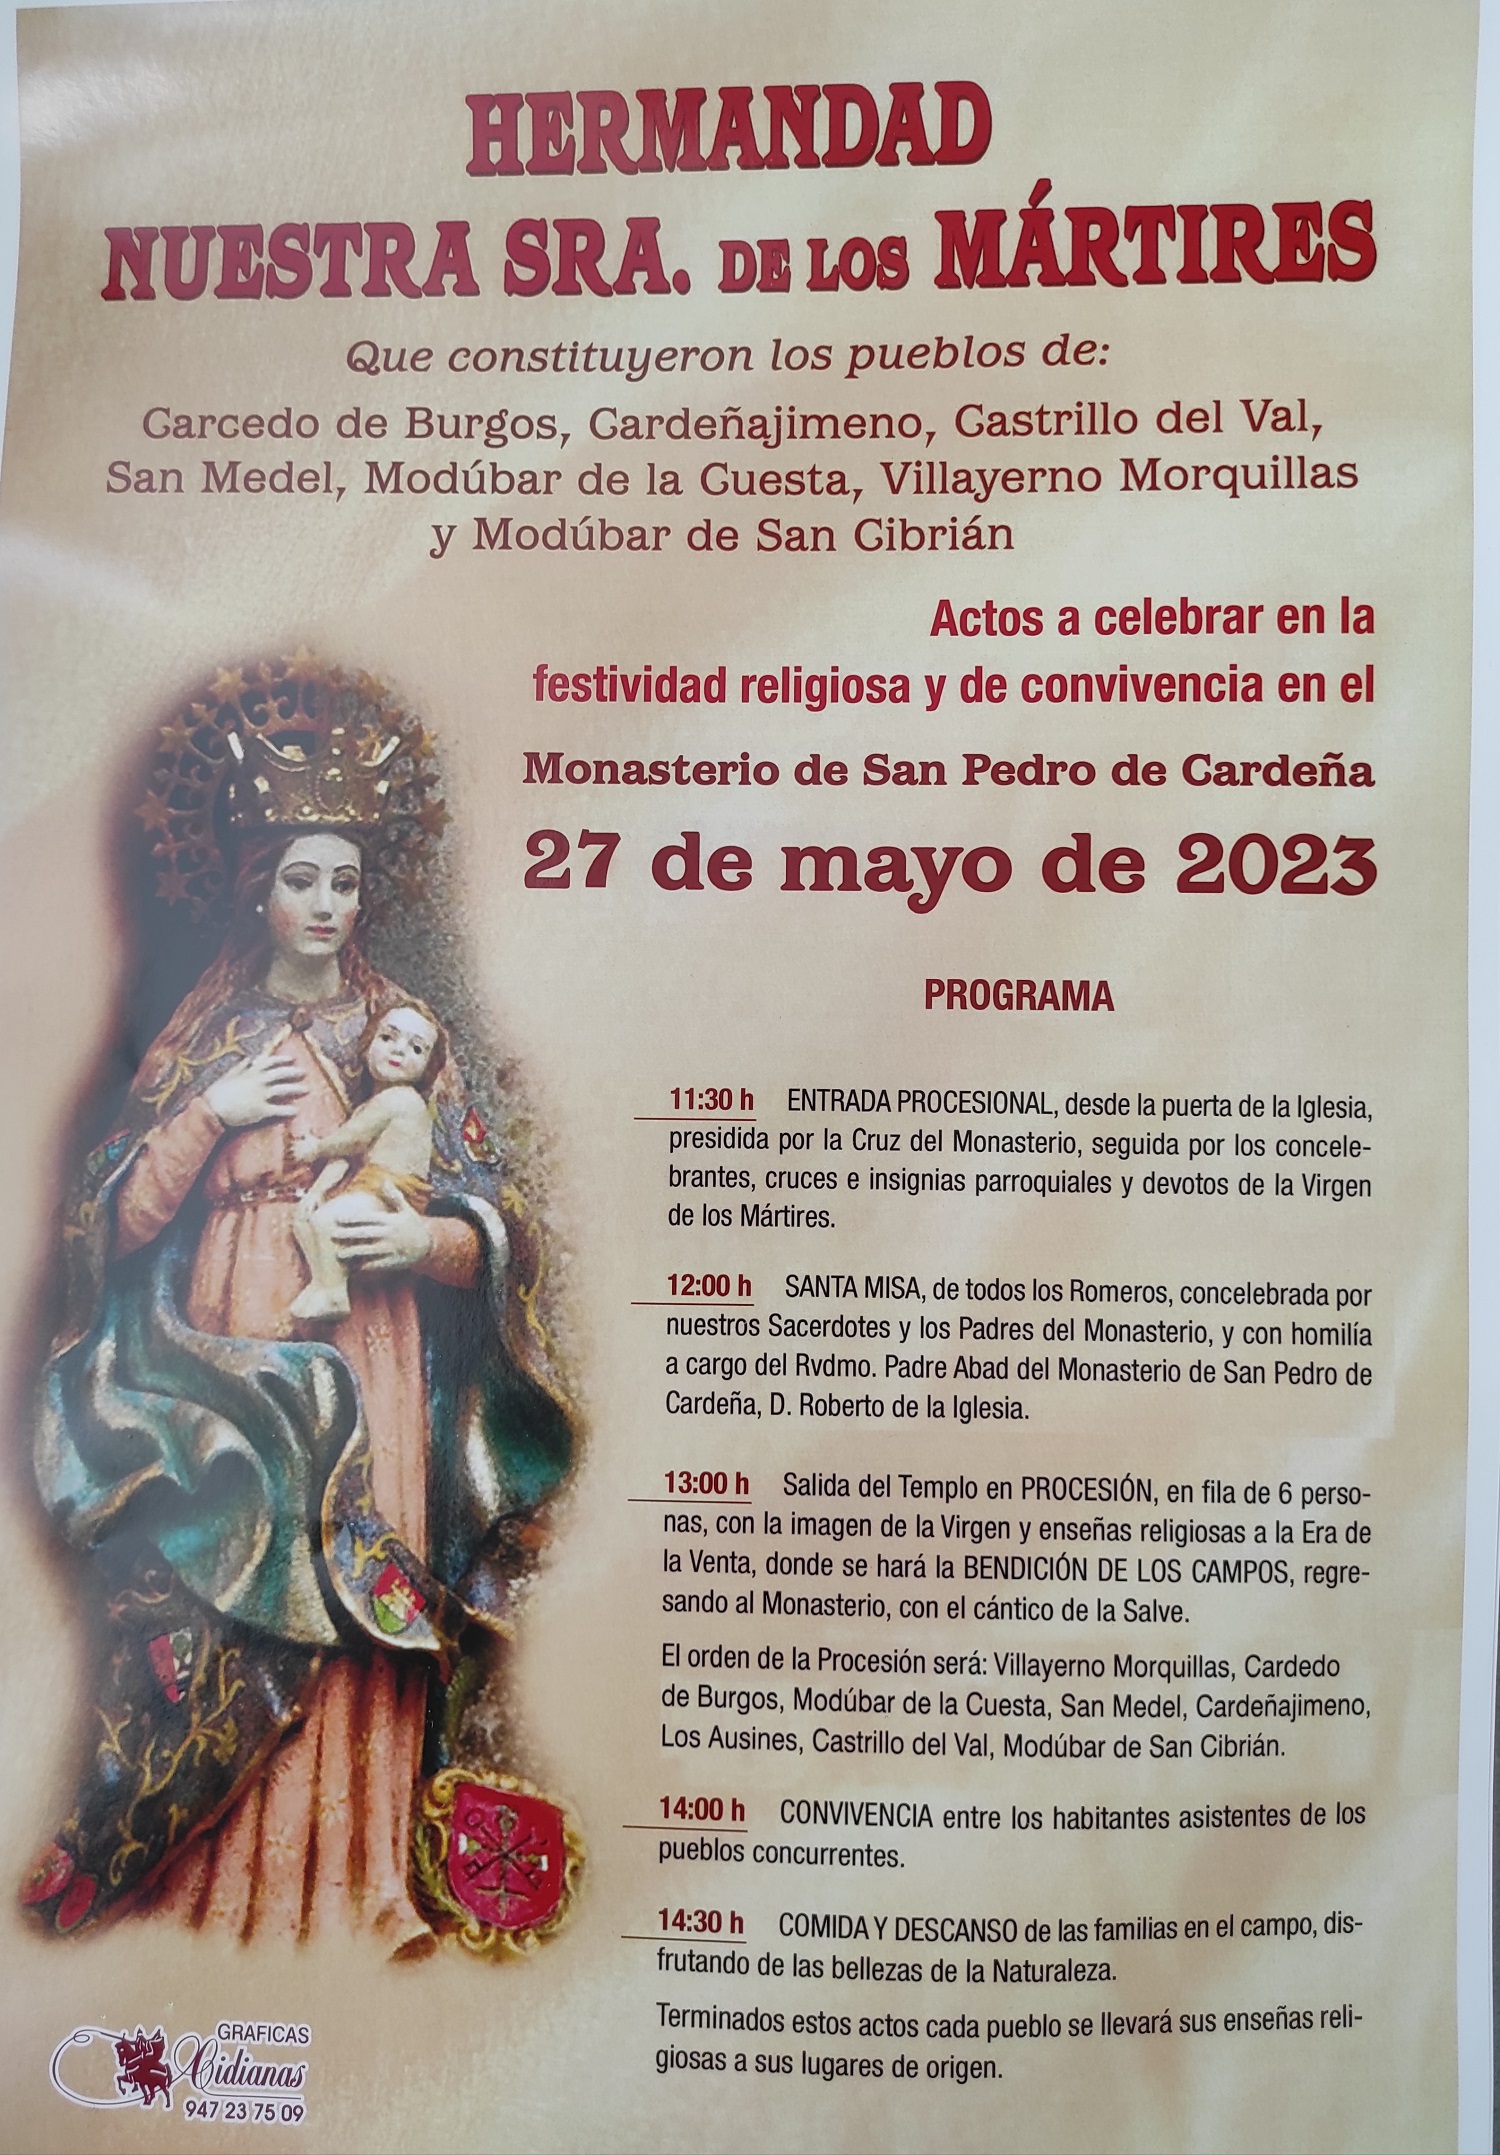 ROMERÍA DÍA 27 DE MAYO DE 2023: HERMANDAD NUESTRA SRA. DE LOS MÁRTIRES. 